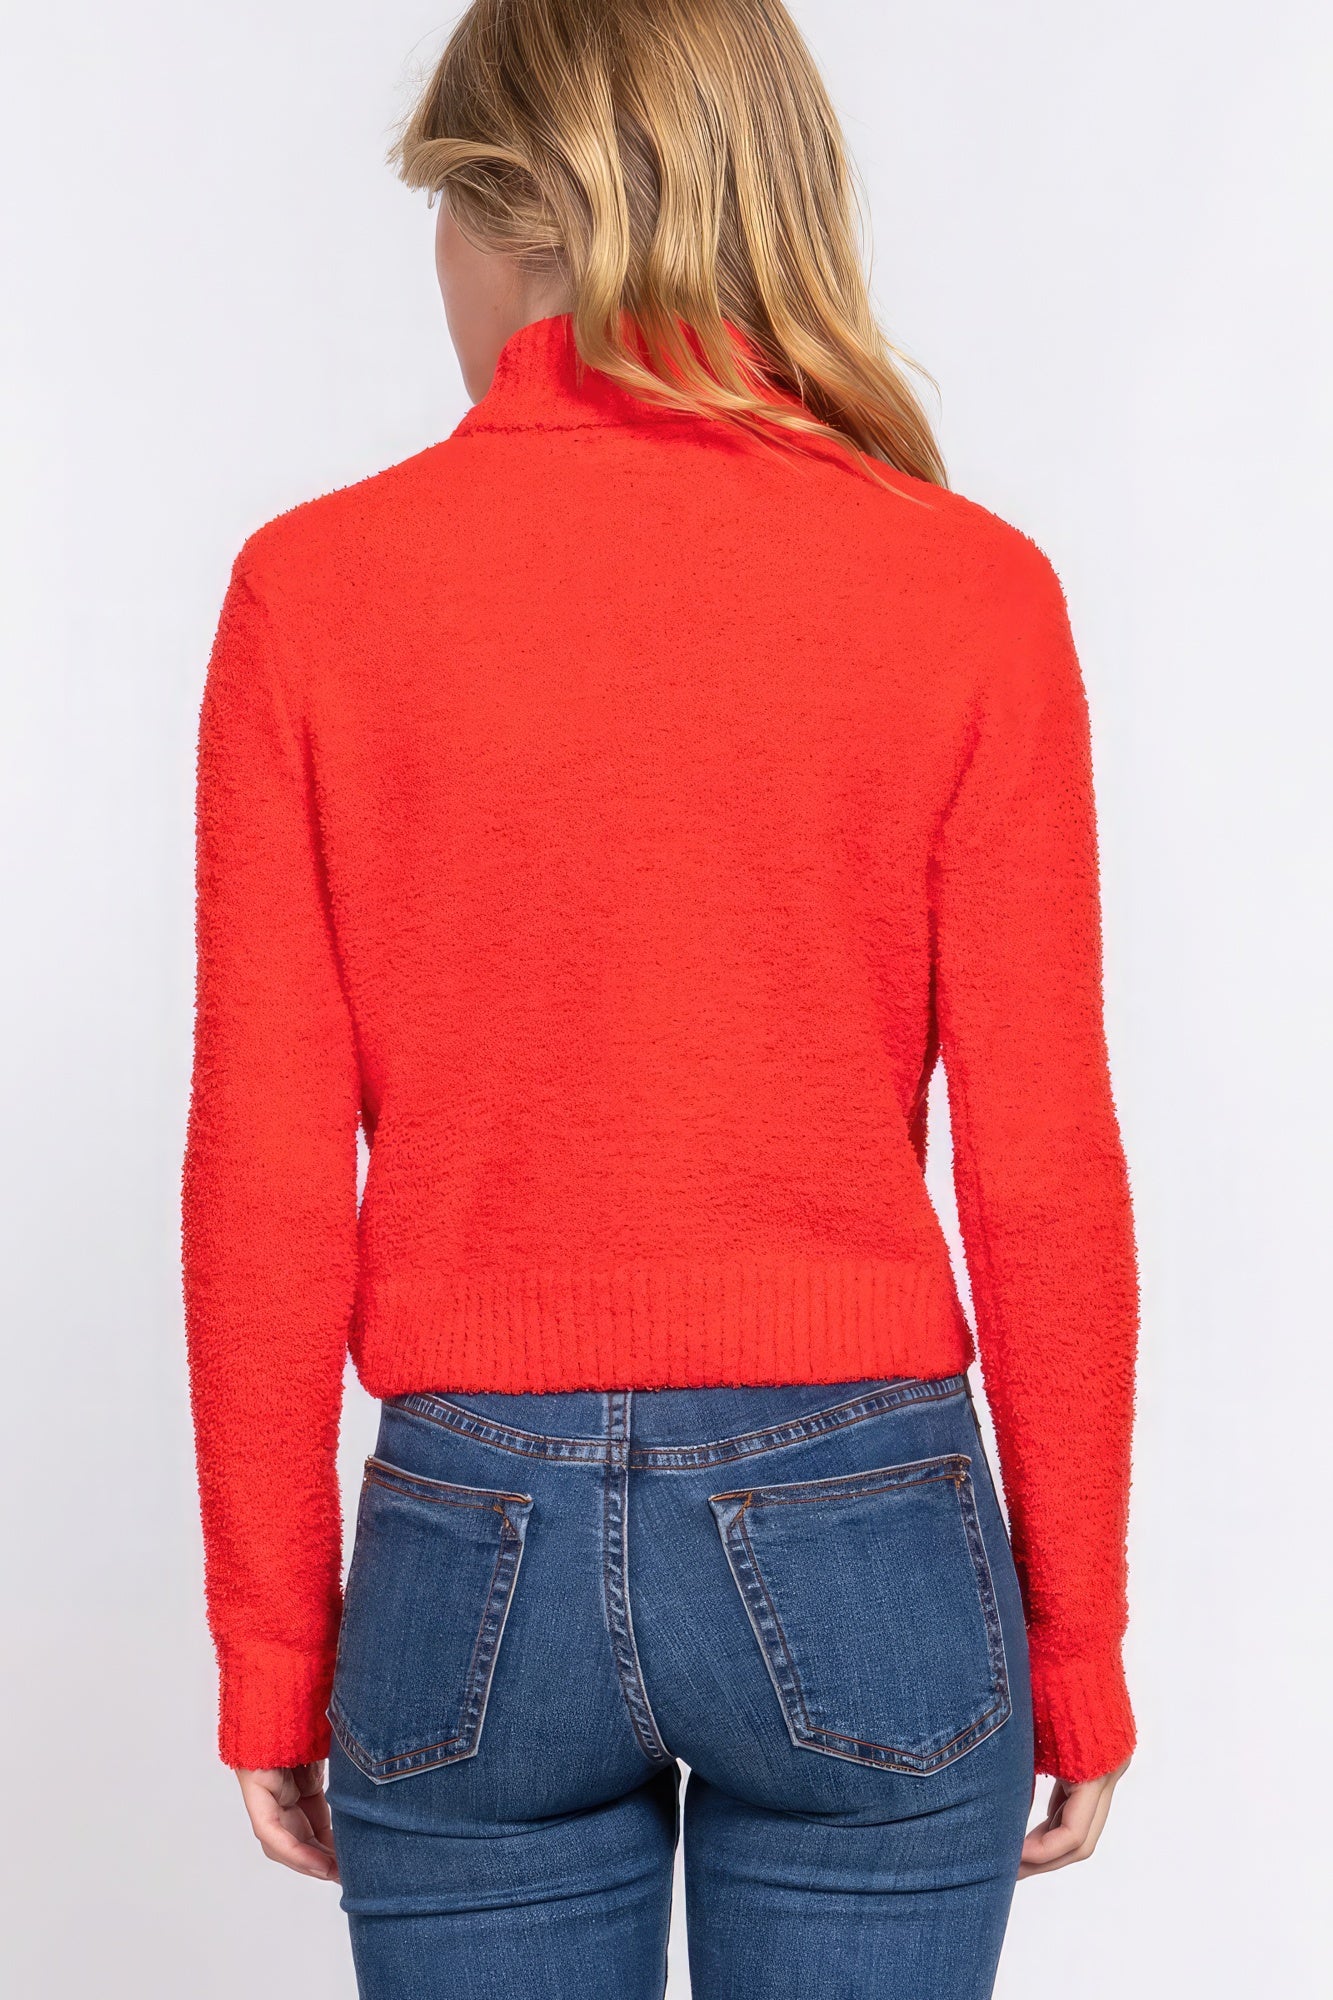 Women's Turtleneck Sweater Top